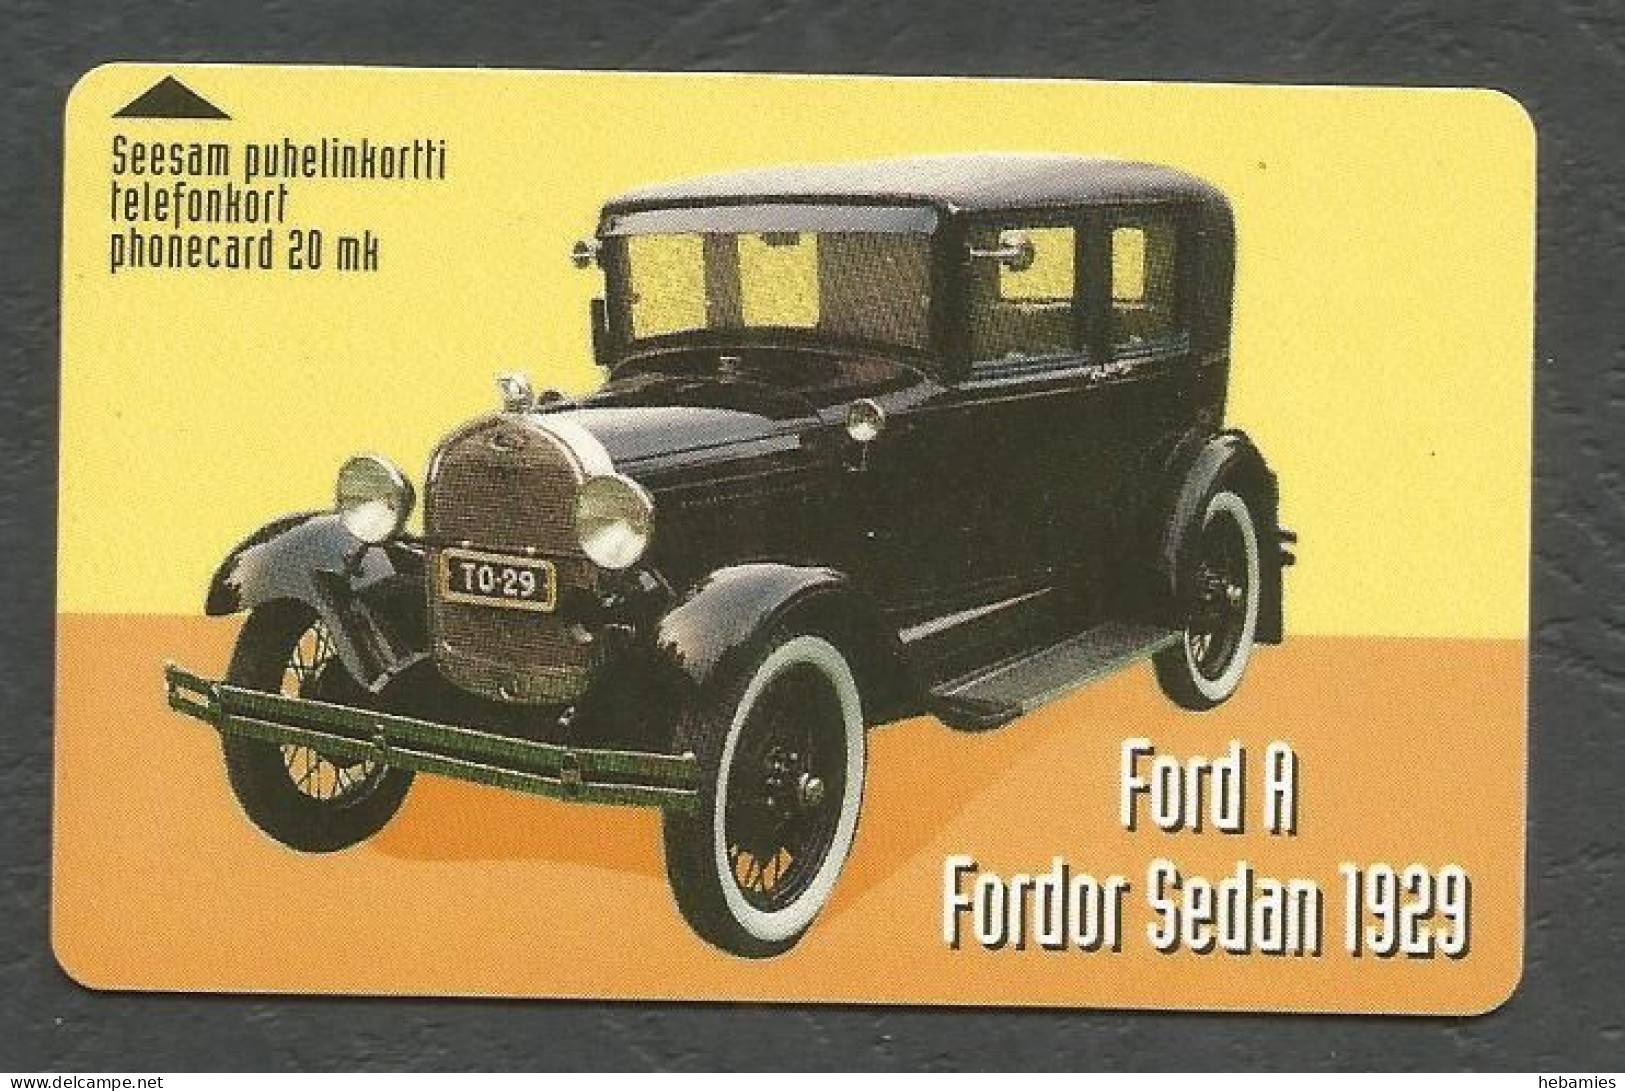 FORD  A FORDOR SEDAN 1929 - Magnetic Card -  20 FIM  FINNET - FINLAND - - Autos